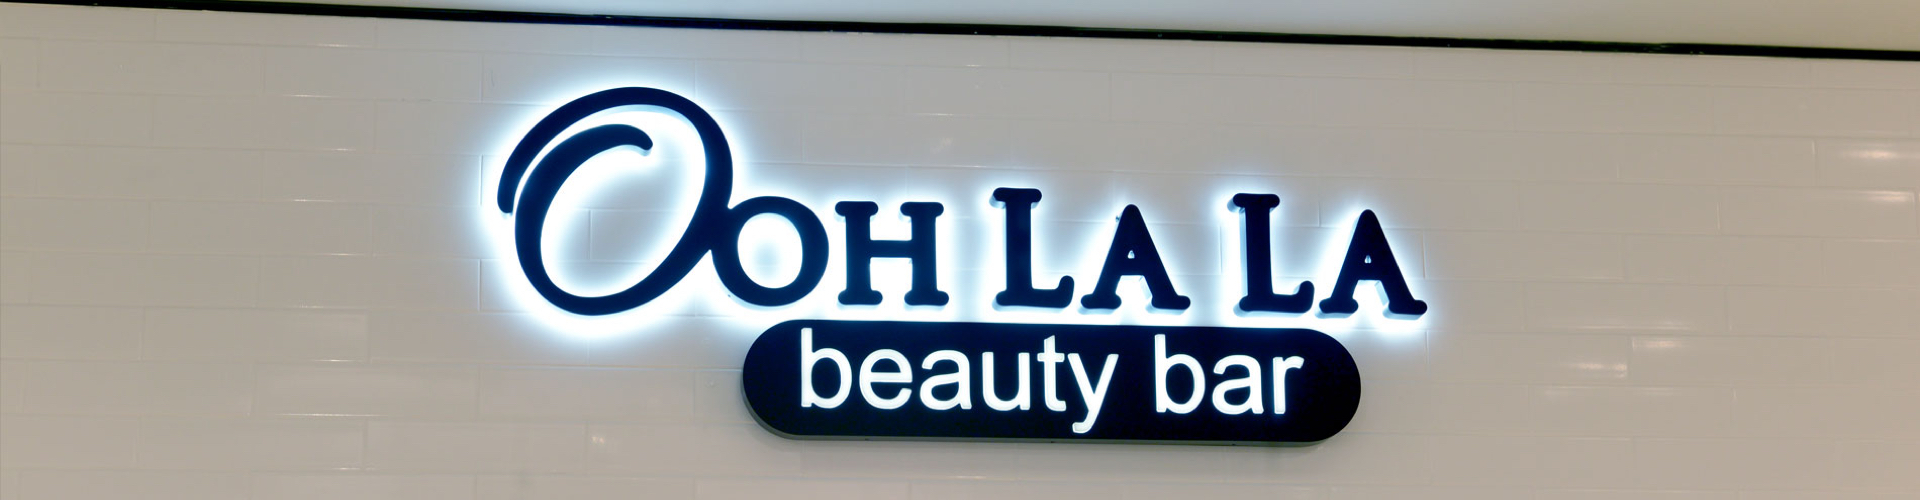 OohLala-header